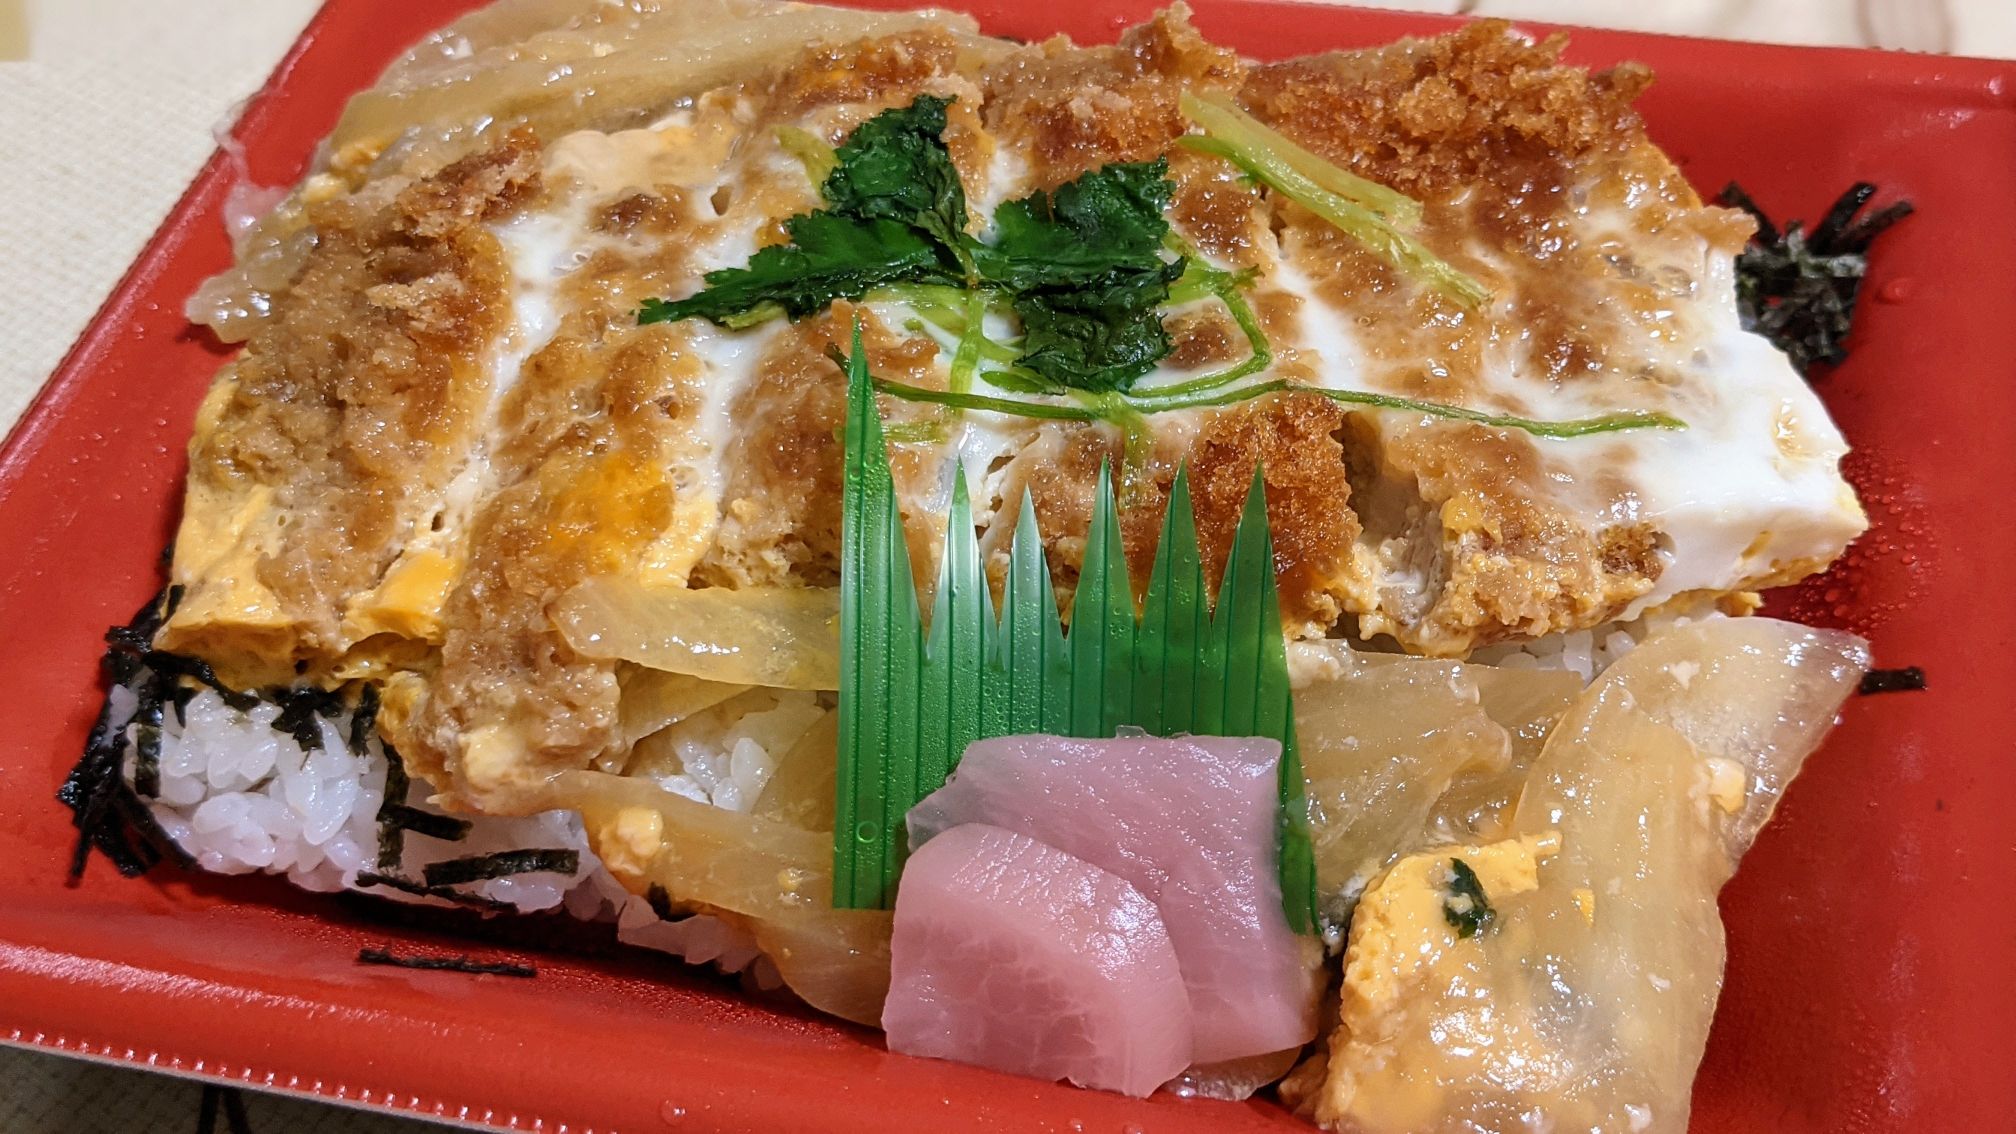 Vdrug（ブイドラッグ）大須店の惣菜